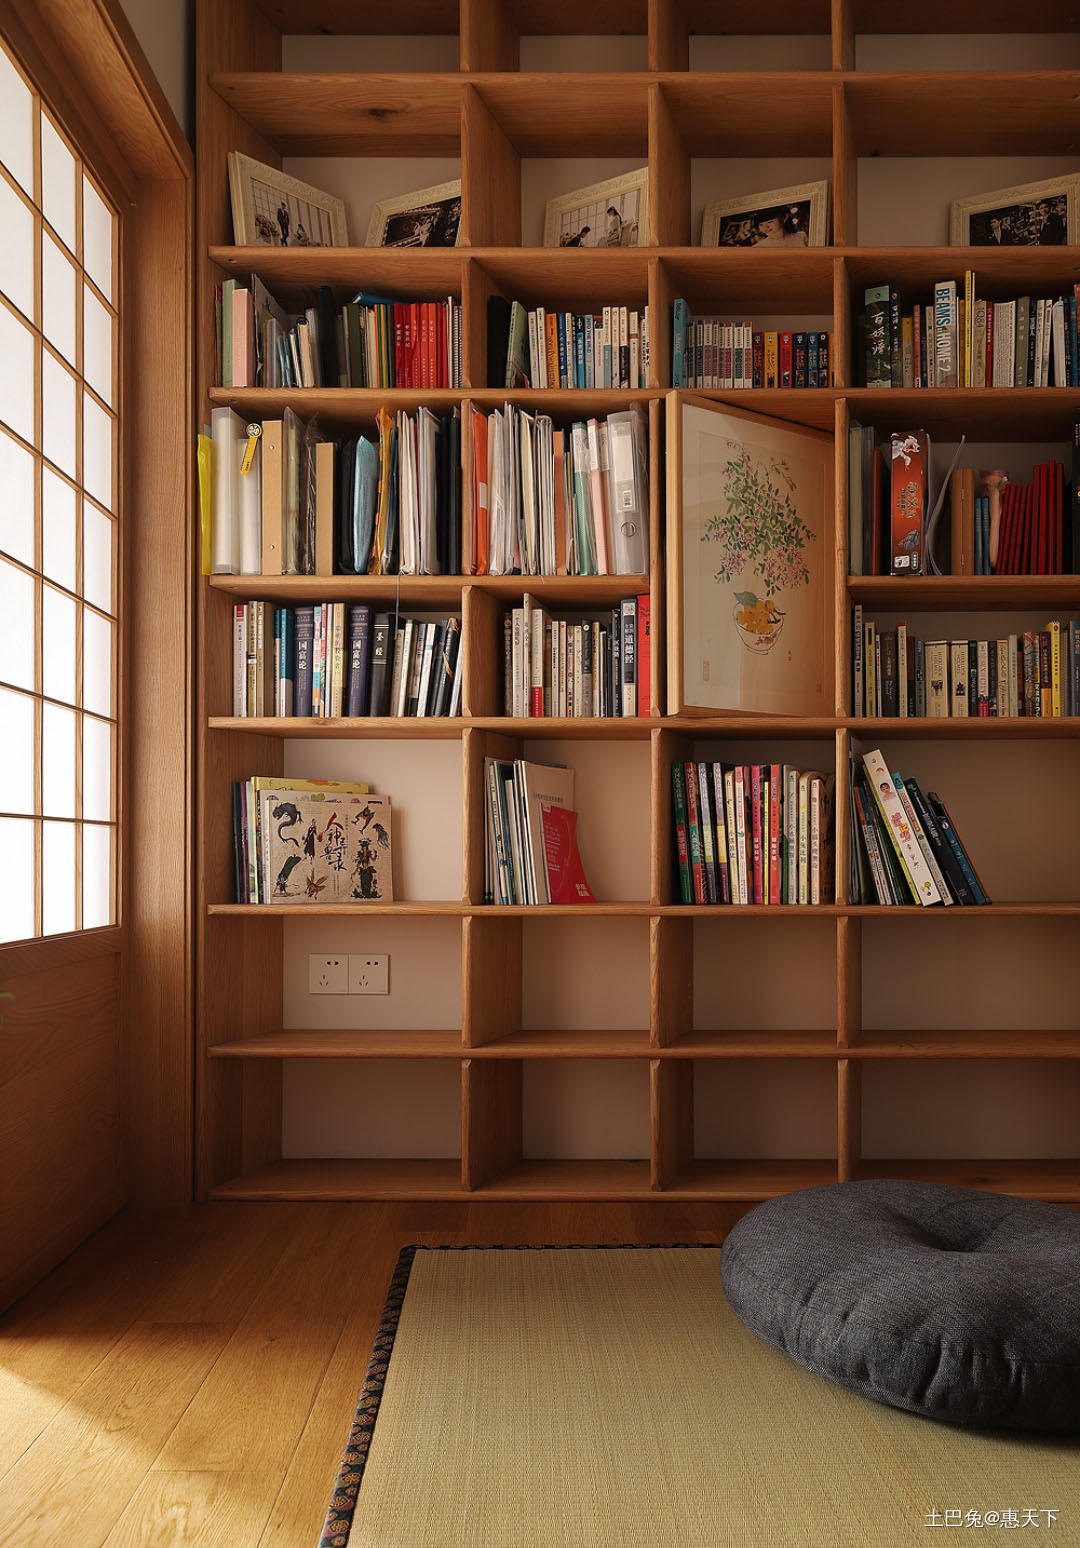 100㎡日式原木风沉浸式躺平之家日式卧室设计图片赏析